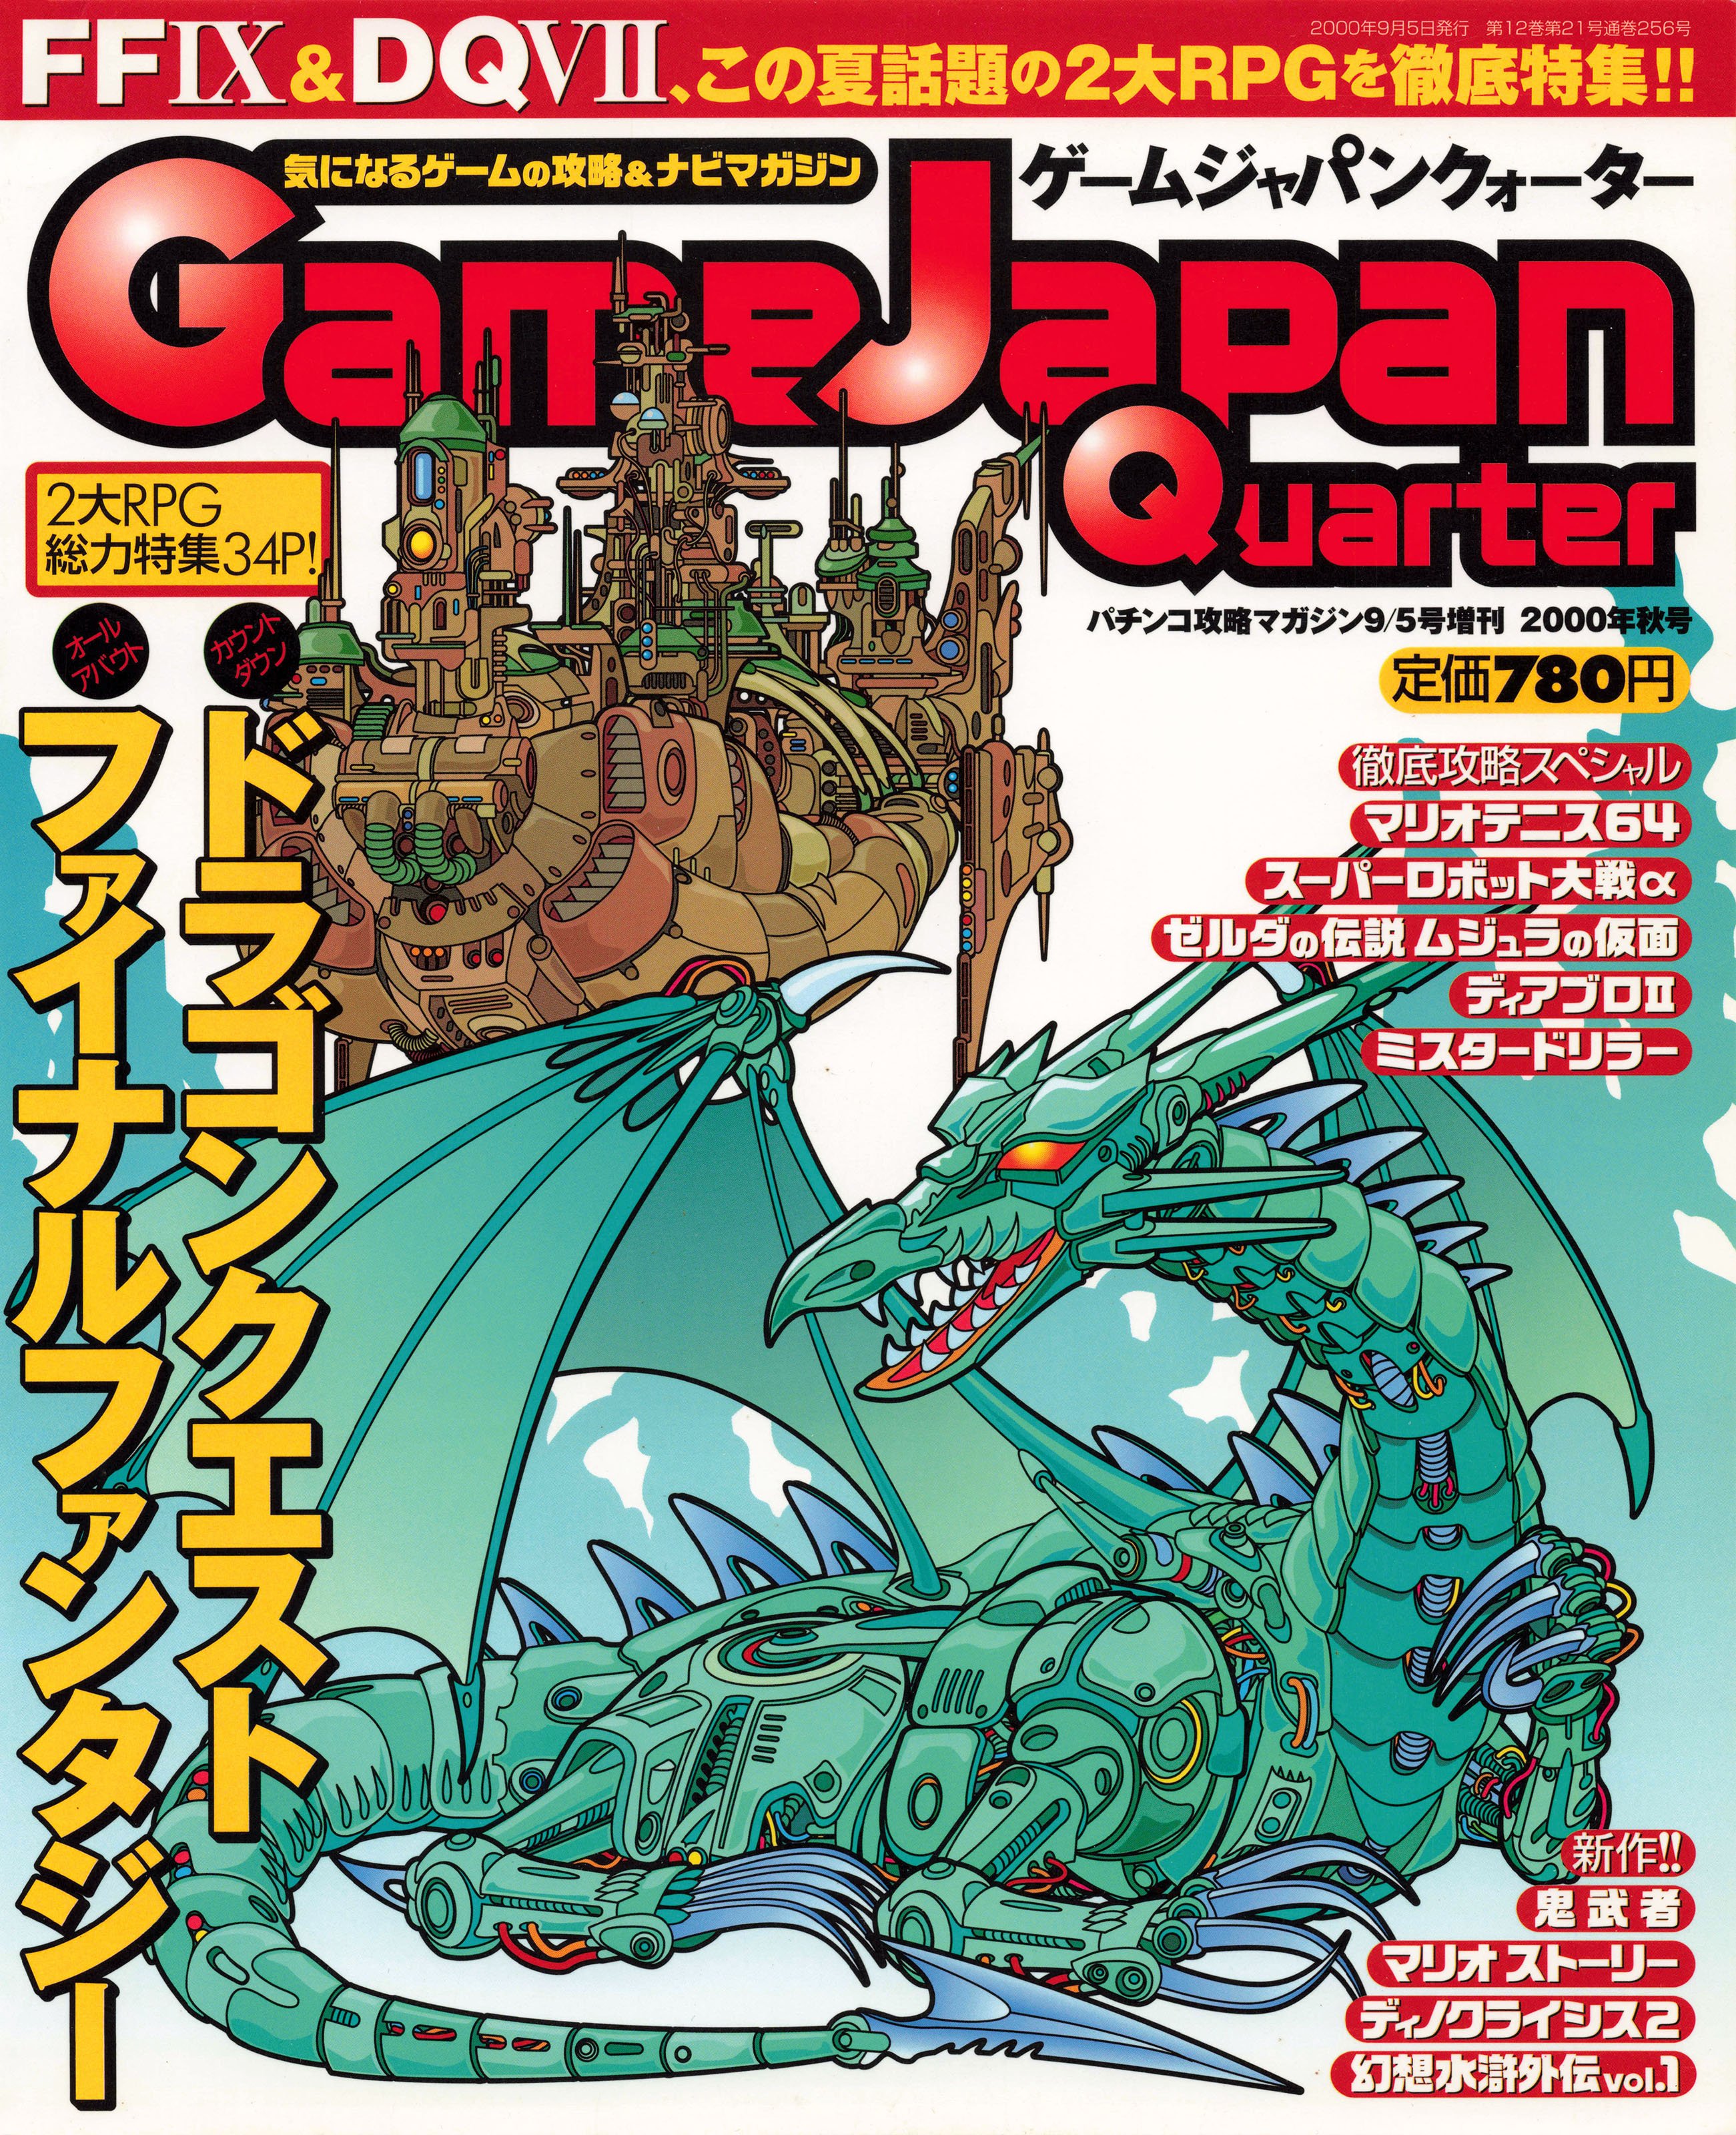 Game Japan Quarter Vol.2 (September 5, 2000)